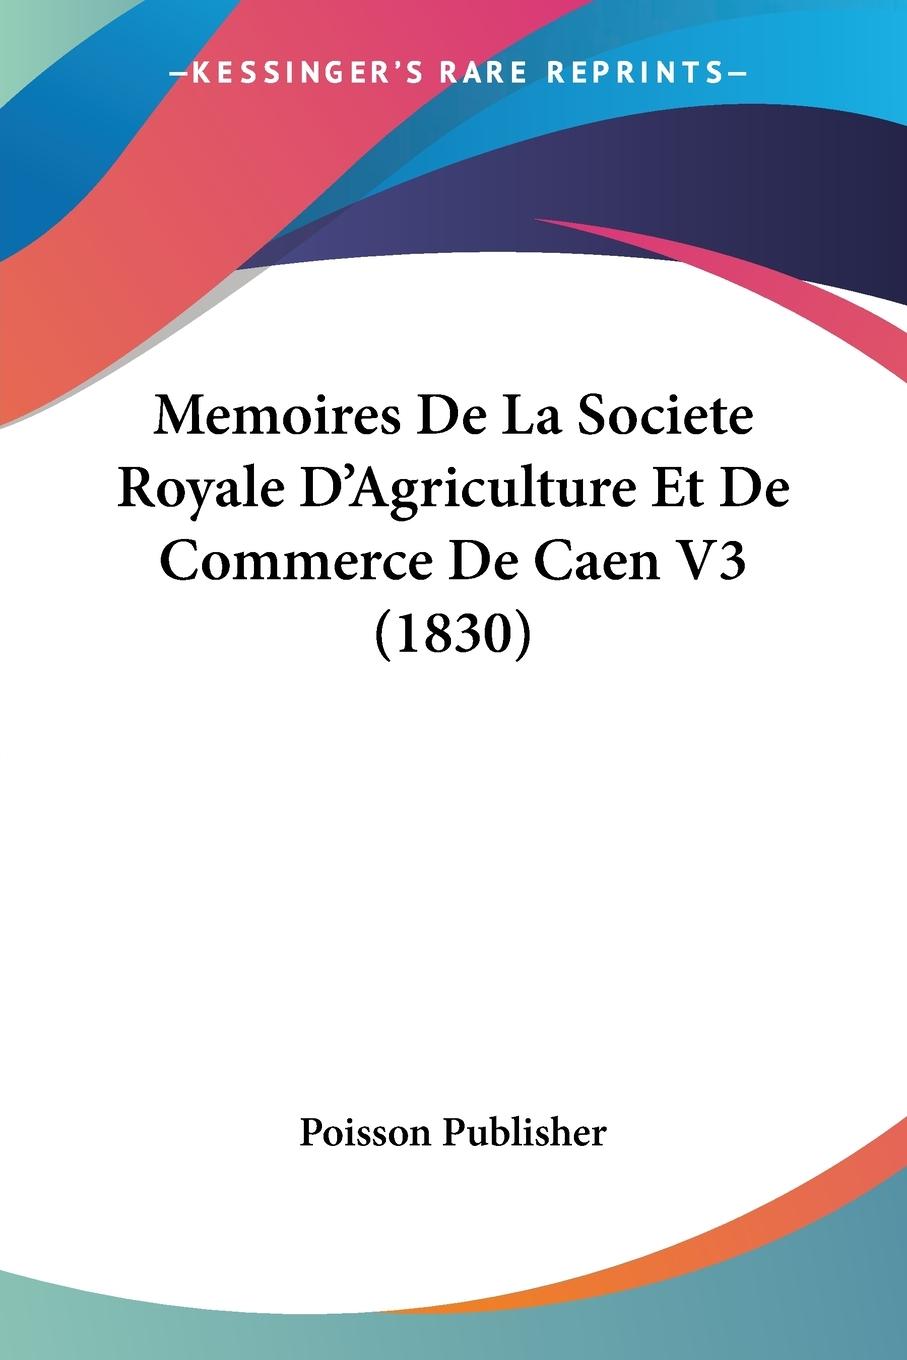 Memoires De La Societe Royale D Agriculture Et De Commerce De Caen V3 (1830) - Poisson Publisher